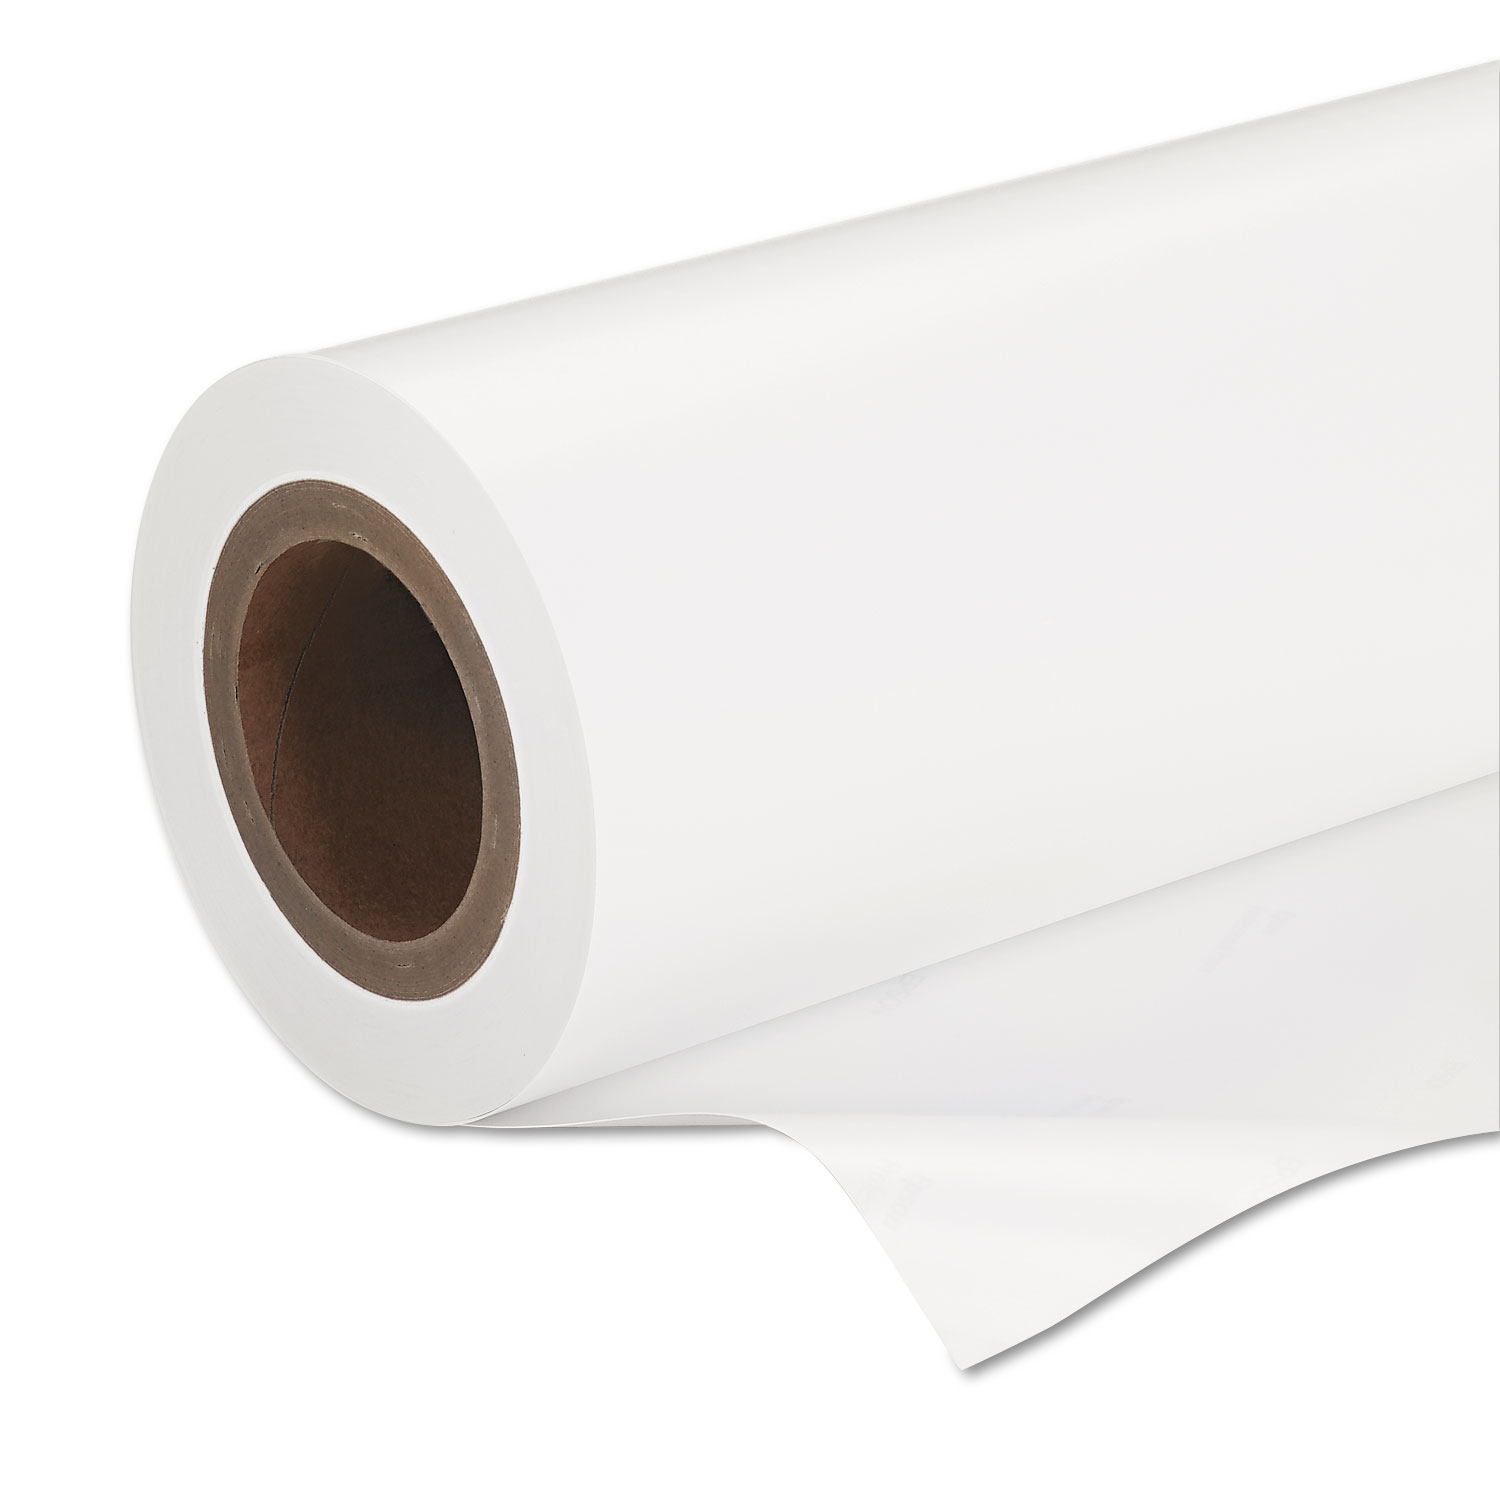  Epson S042075 Premium Semigloss Photo Paper Roll, 7 mil, 16.5 x 100 ft, Semi-Gloss White (EPSS042075) 